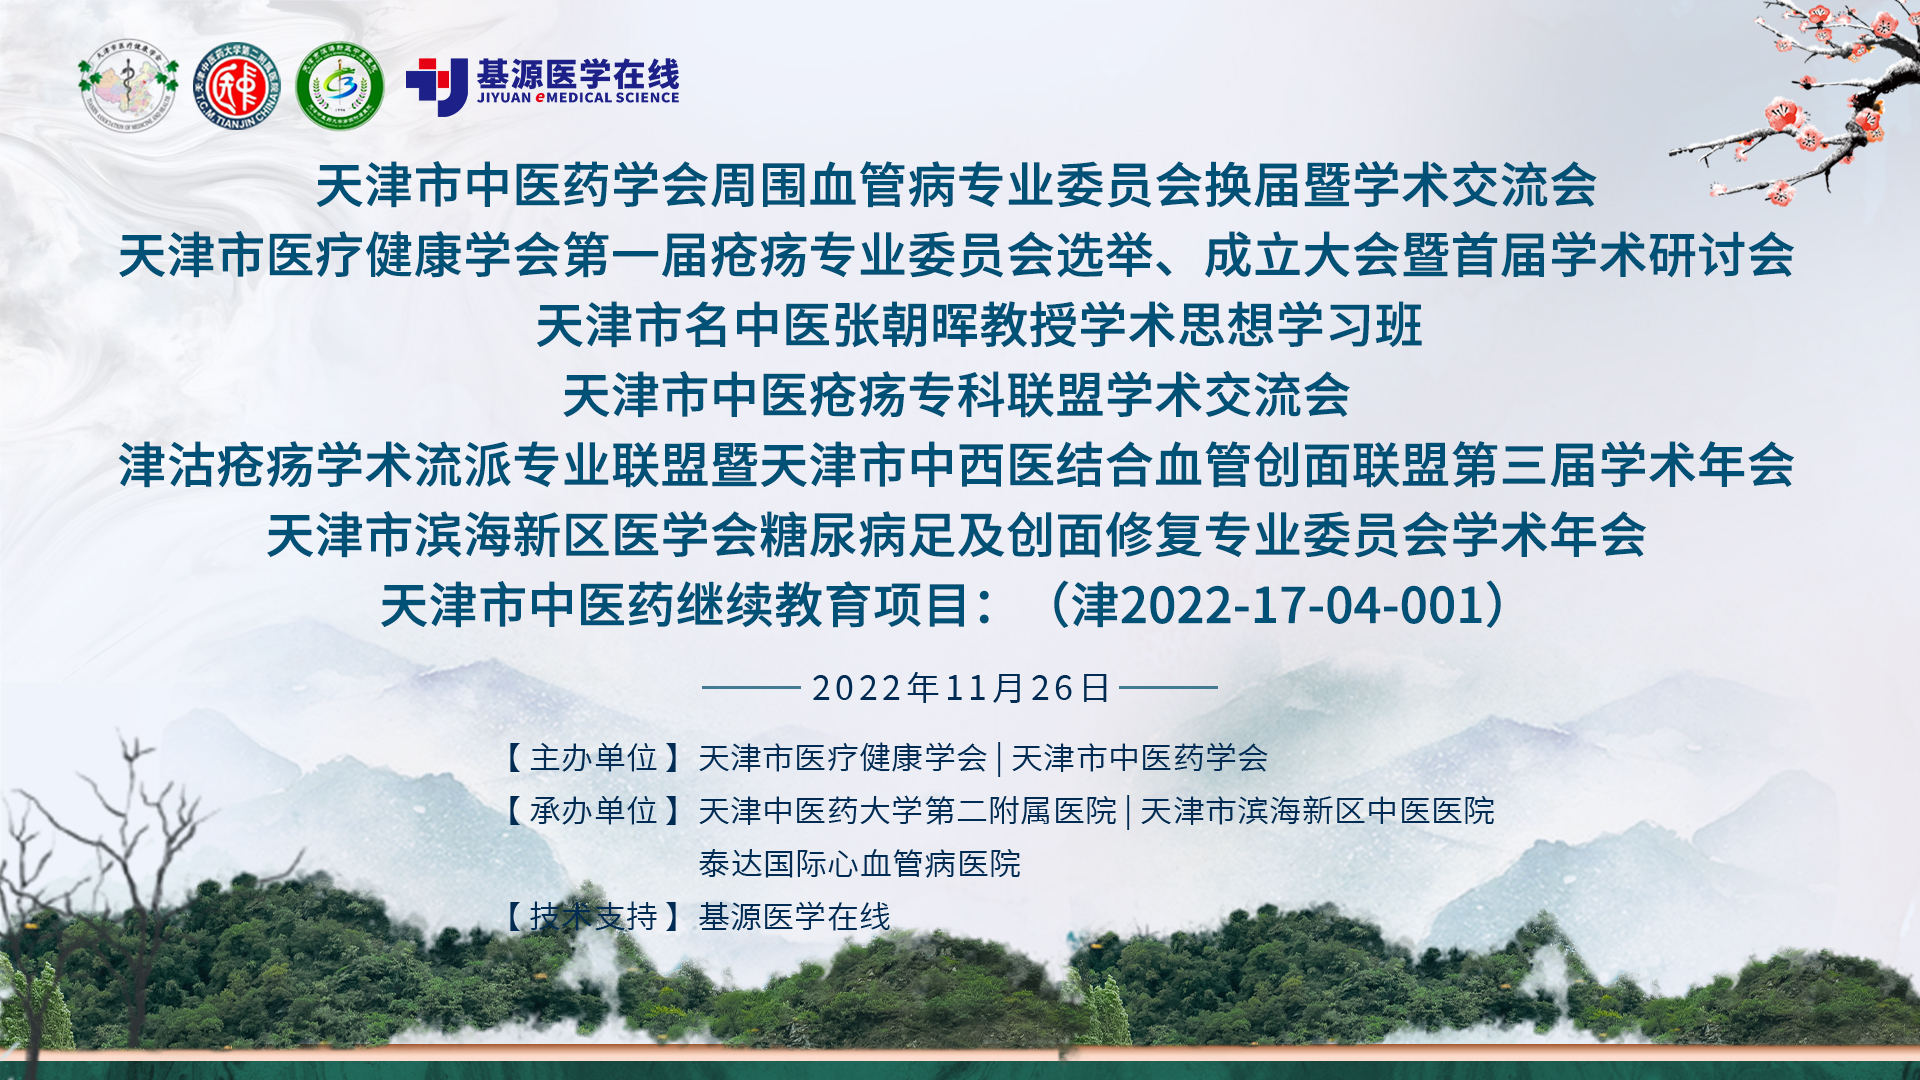 天津市医疗健康学会第一届疡科专业委员会选举、成立大会暨首届学术研讨会